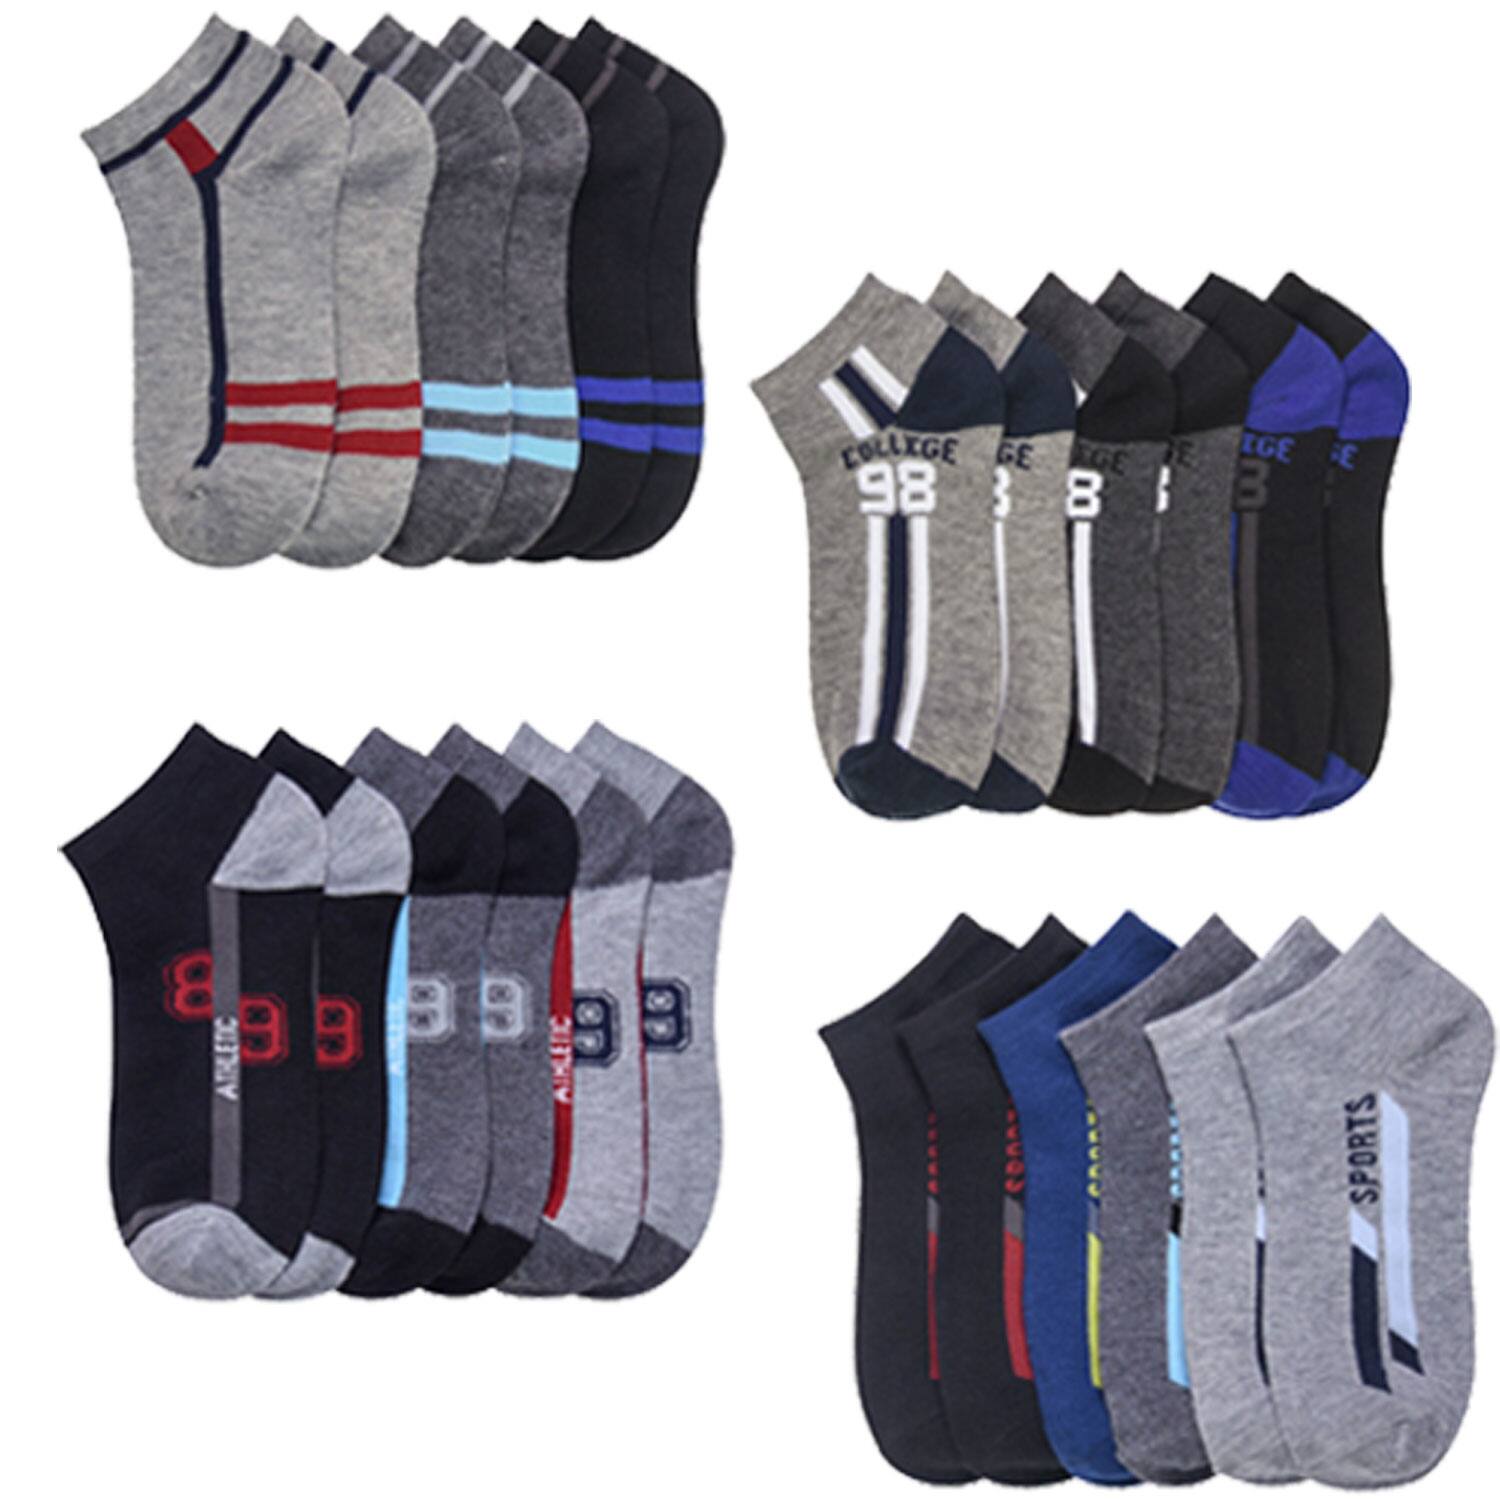 12 Pair Spandex Socks $11.24 + Free shipping